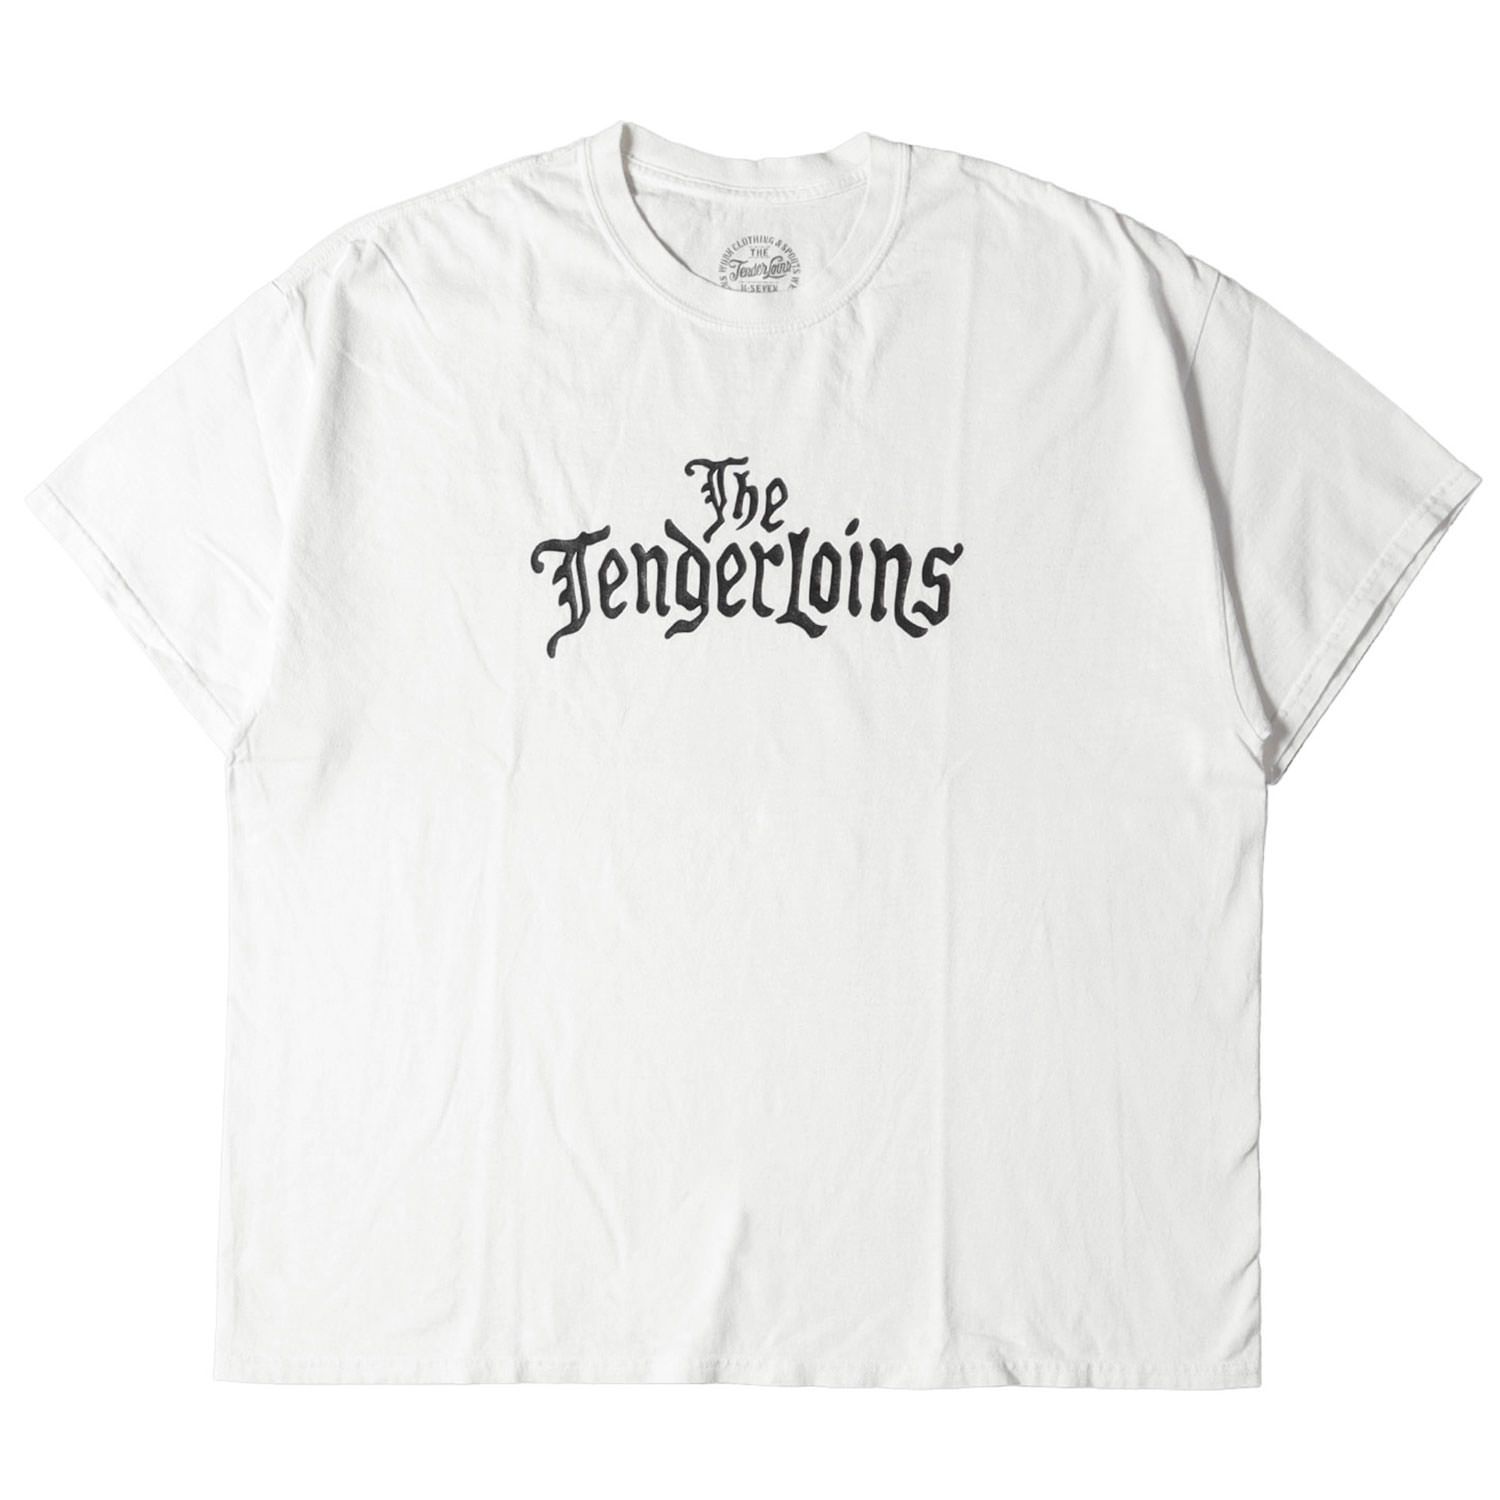 テンダーロイン 黒 Tシャツ XL TEE-T THE TENDERLOIN-